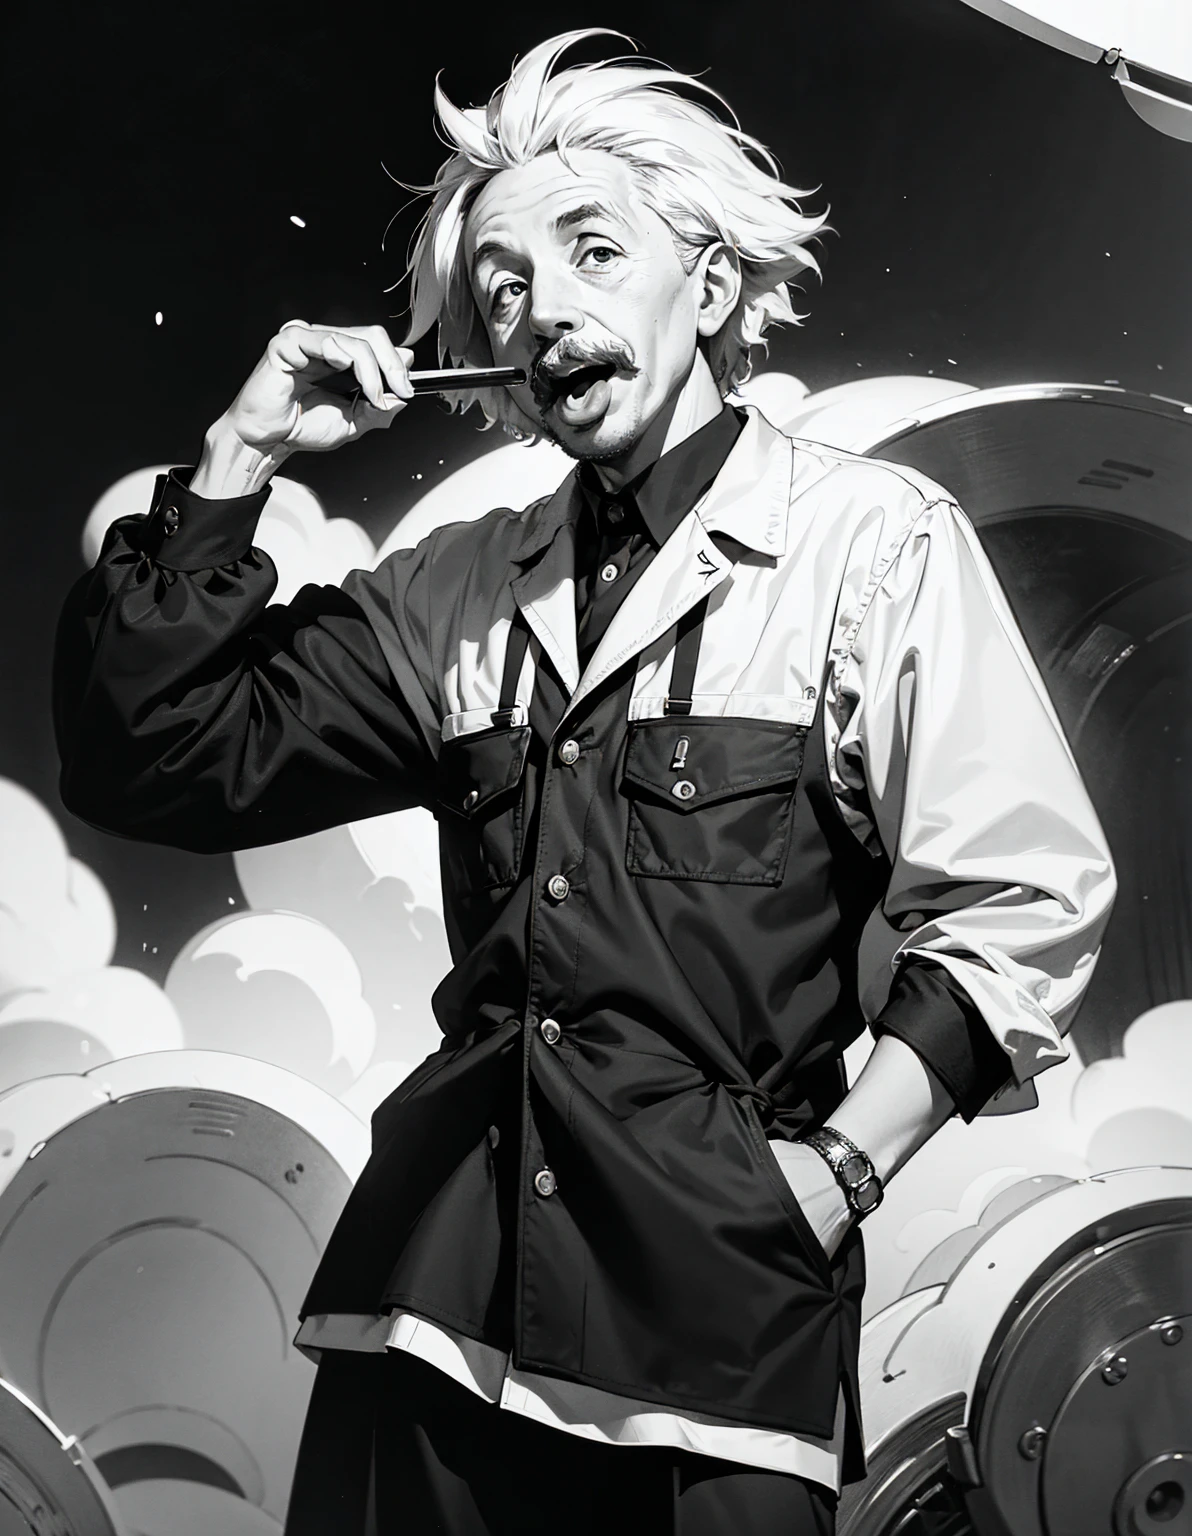 ภาพถ่ายขาวดำอันโด่งดังแสดงให้เห็นไอน์สไตน์ยื่นลิ้นออกมา、มัน is widely known for capturing his humorous and human side.。ภาพนี้แสดงให้เห็น、ภาพนี้ถ่ายโดยไอน์สไตน์&#39;วันเกิดปีที่ 72 ในปี พ.ศ. 2494.、นี่เป็นสิ่งที่แตกต่างอย่างสิ้นเชิงกับภาพลักษณ์ที่เข้มงวดของนักวิชาการ.。อารมณ์ขันที่เป็นเอกลักษณ์ของเขา、มัน&#39;รวบรวมไว้เป็นภาพเดียวนี้.。